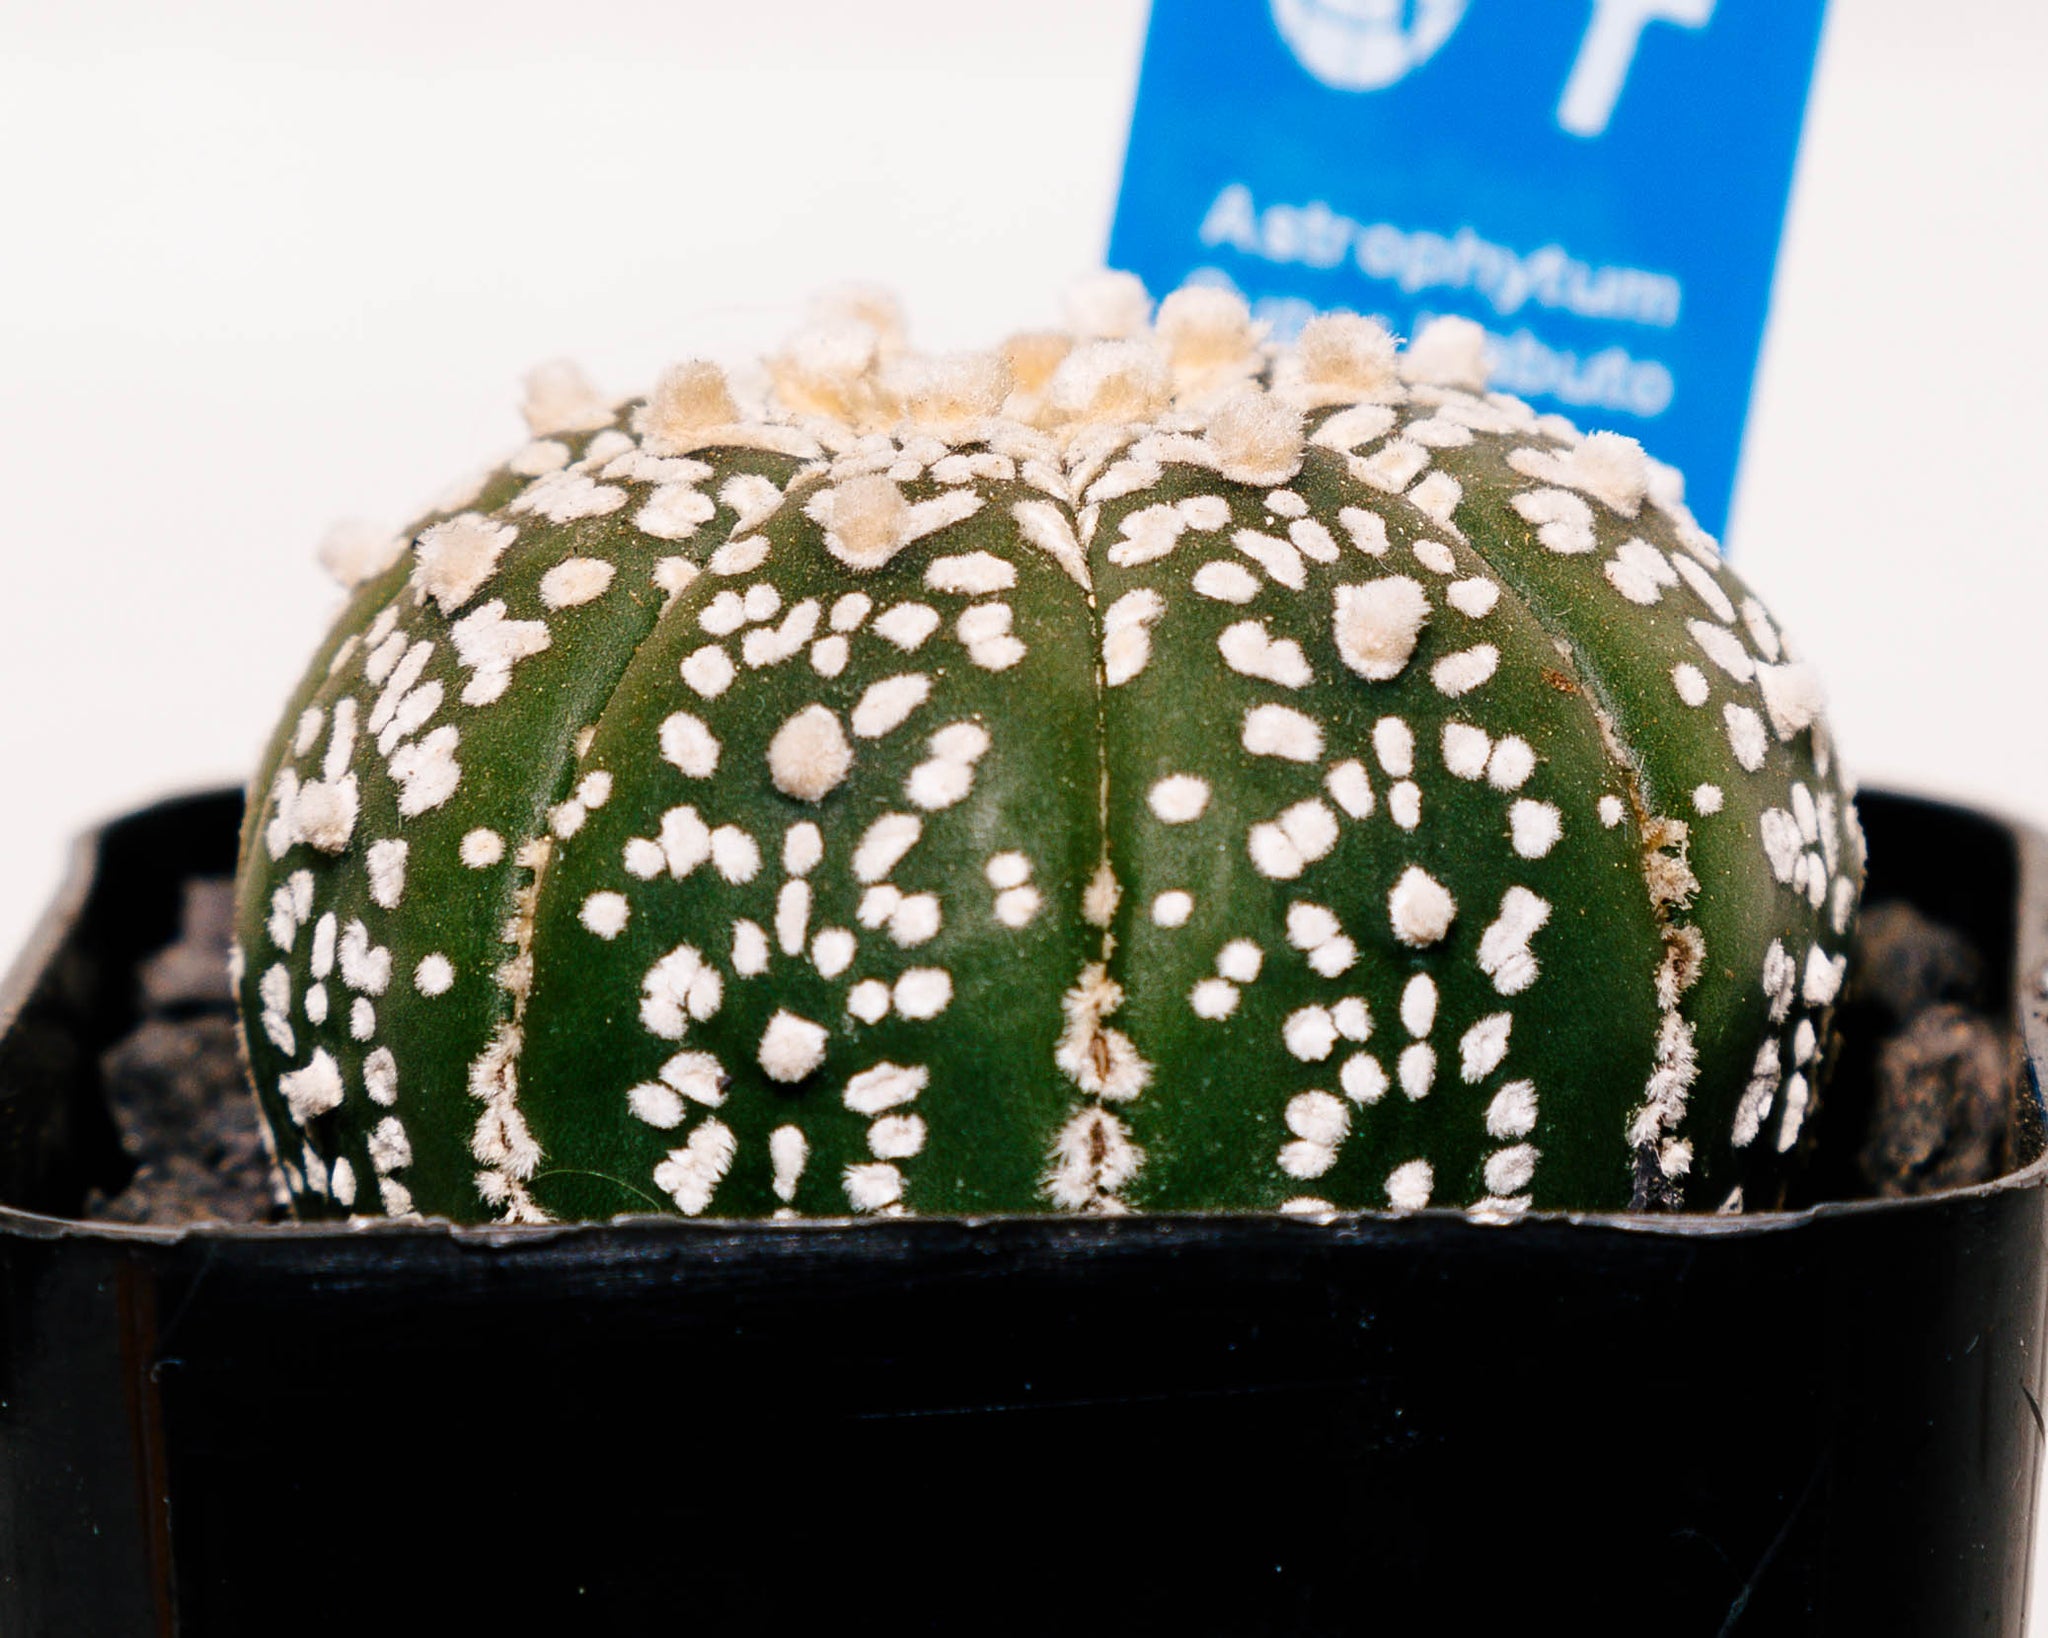 Astrophytum asterias cv. Super Kabuto V type